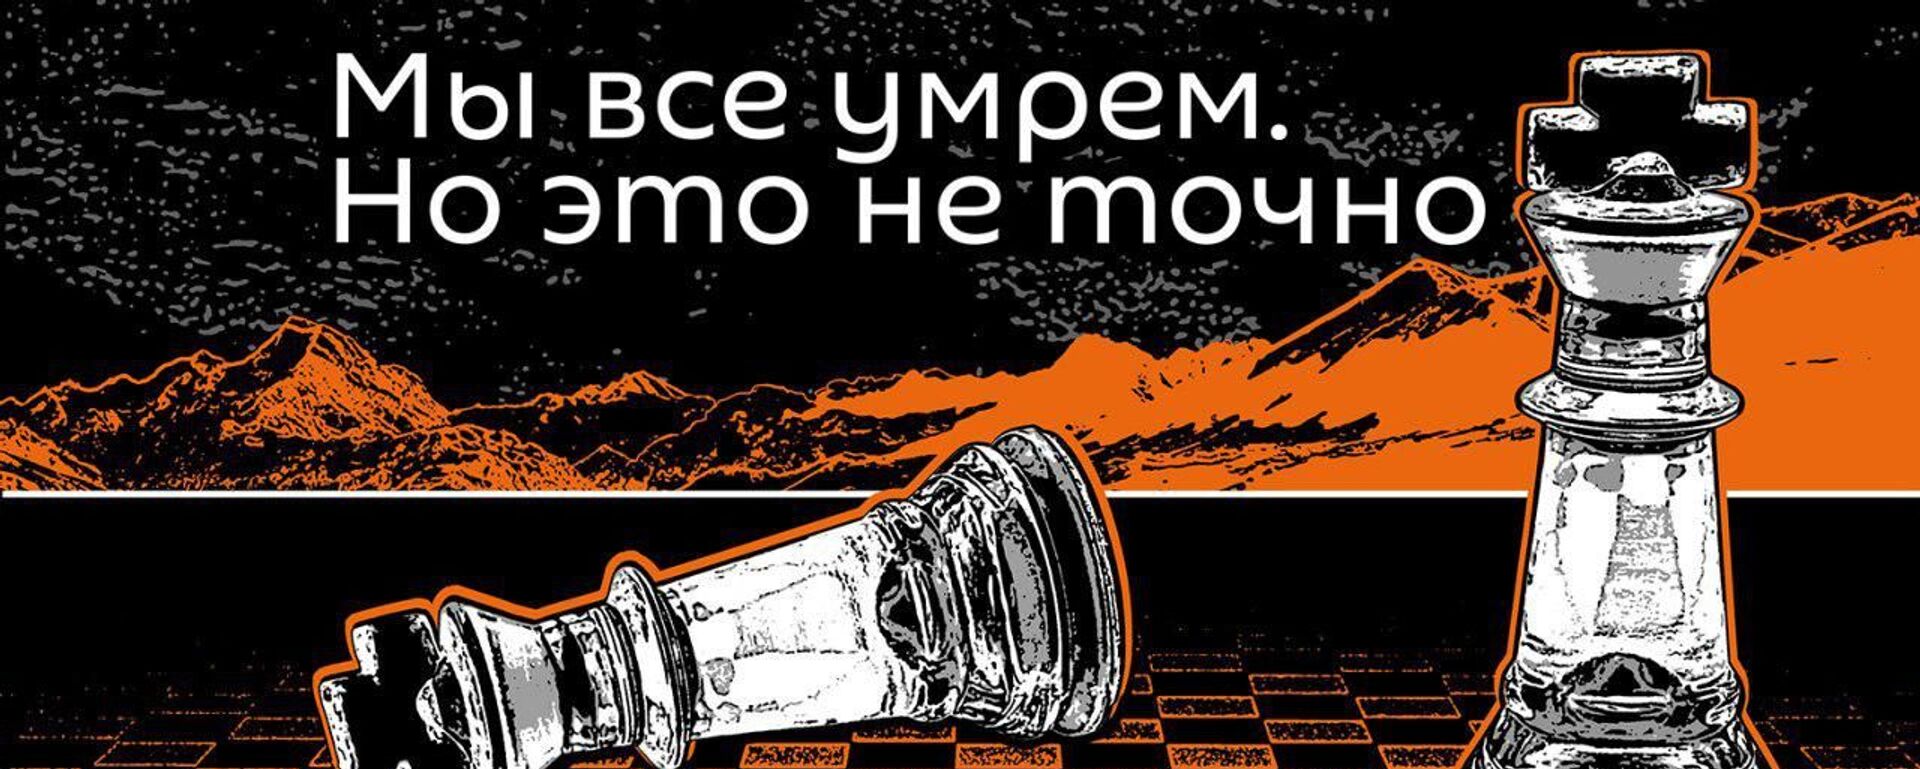 Мы все умрем. но это не точно - Sputnik Абхазия, 1920, 06.06.2021